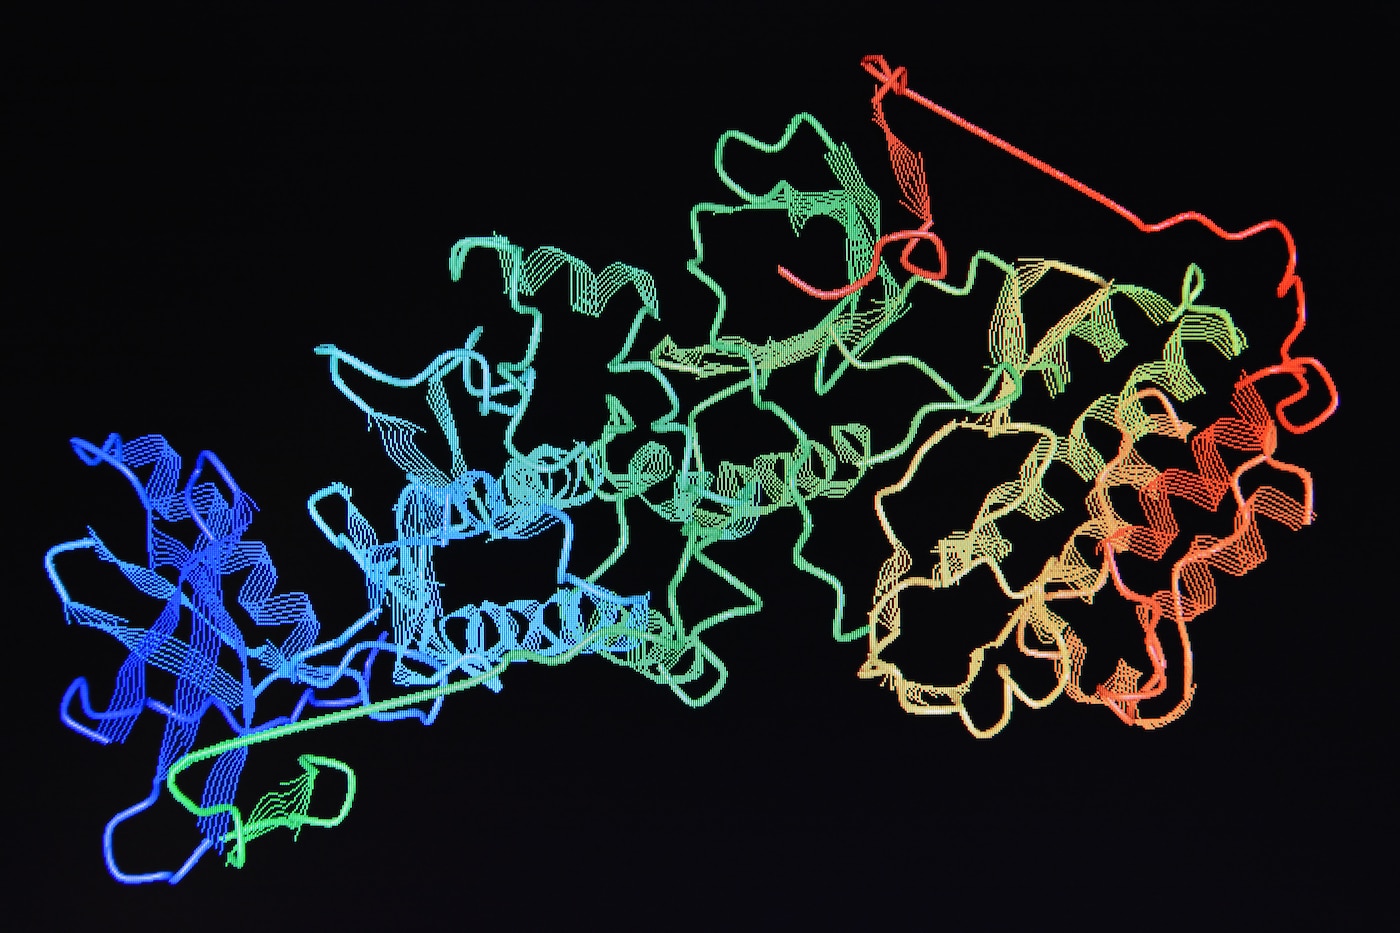 protein molecule